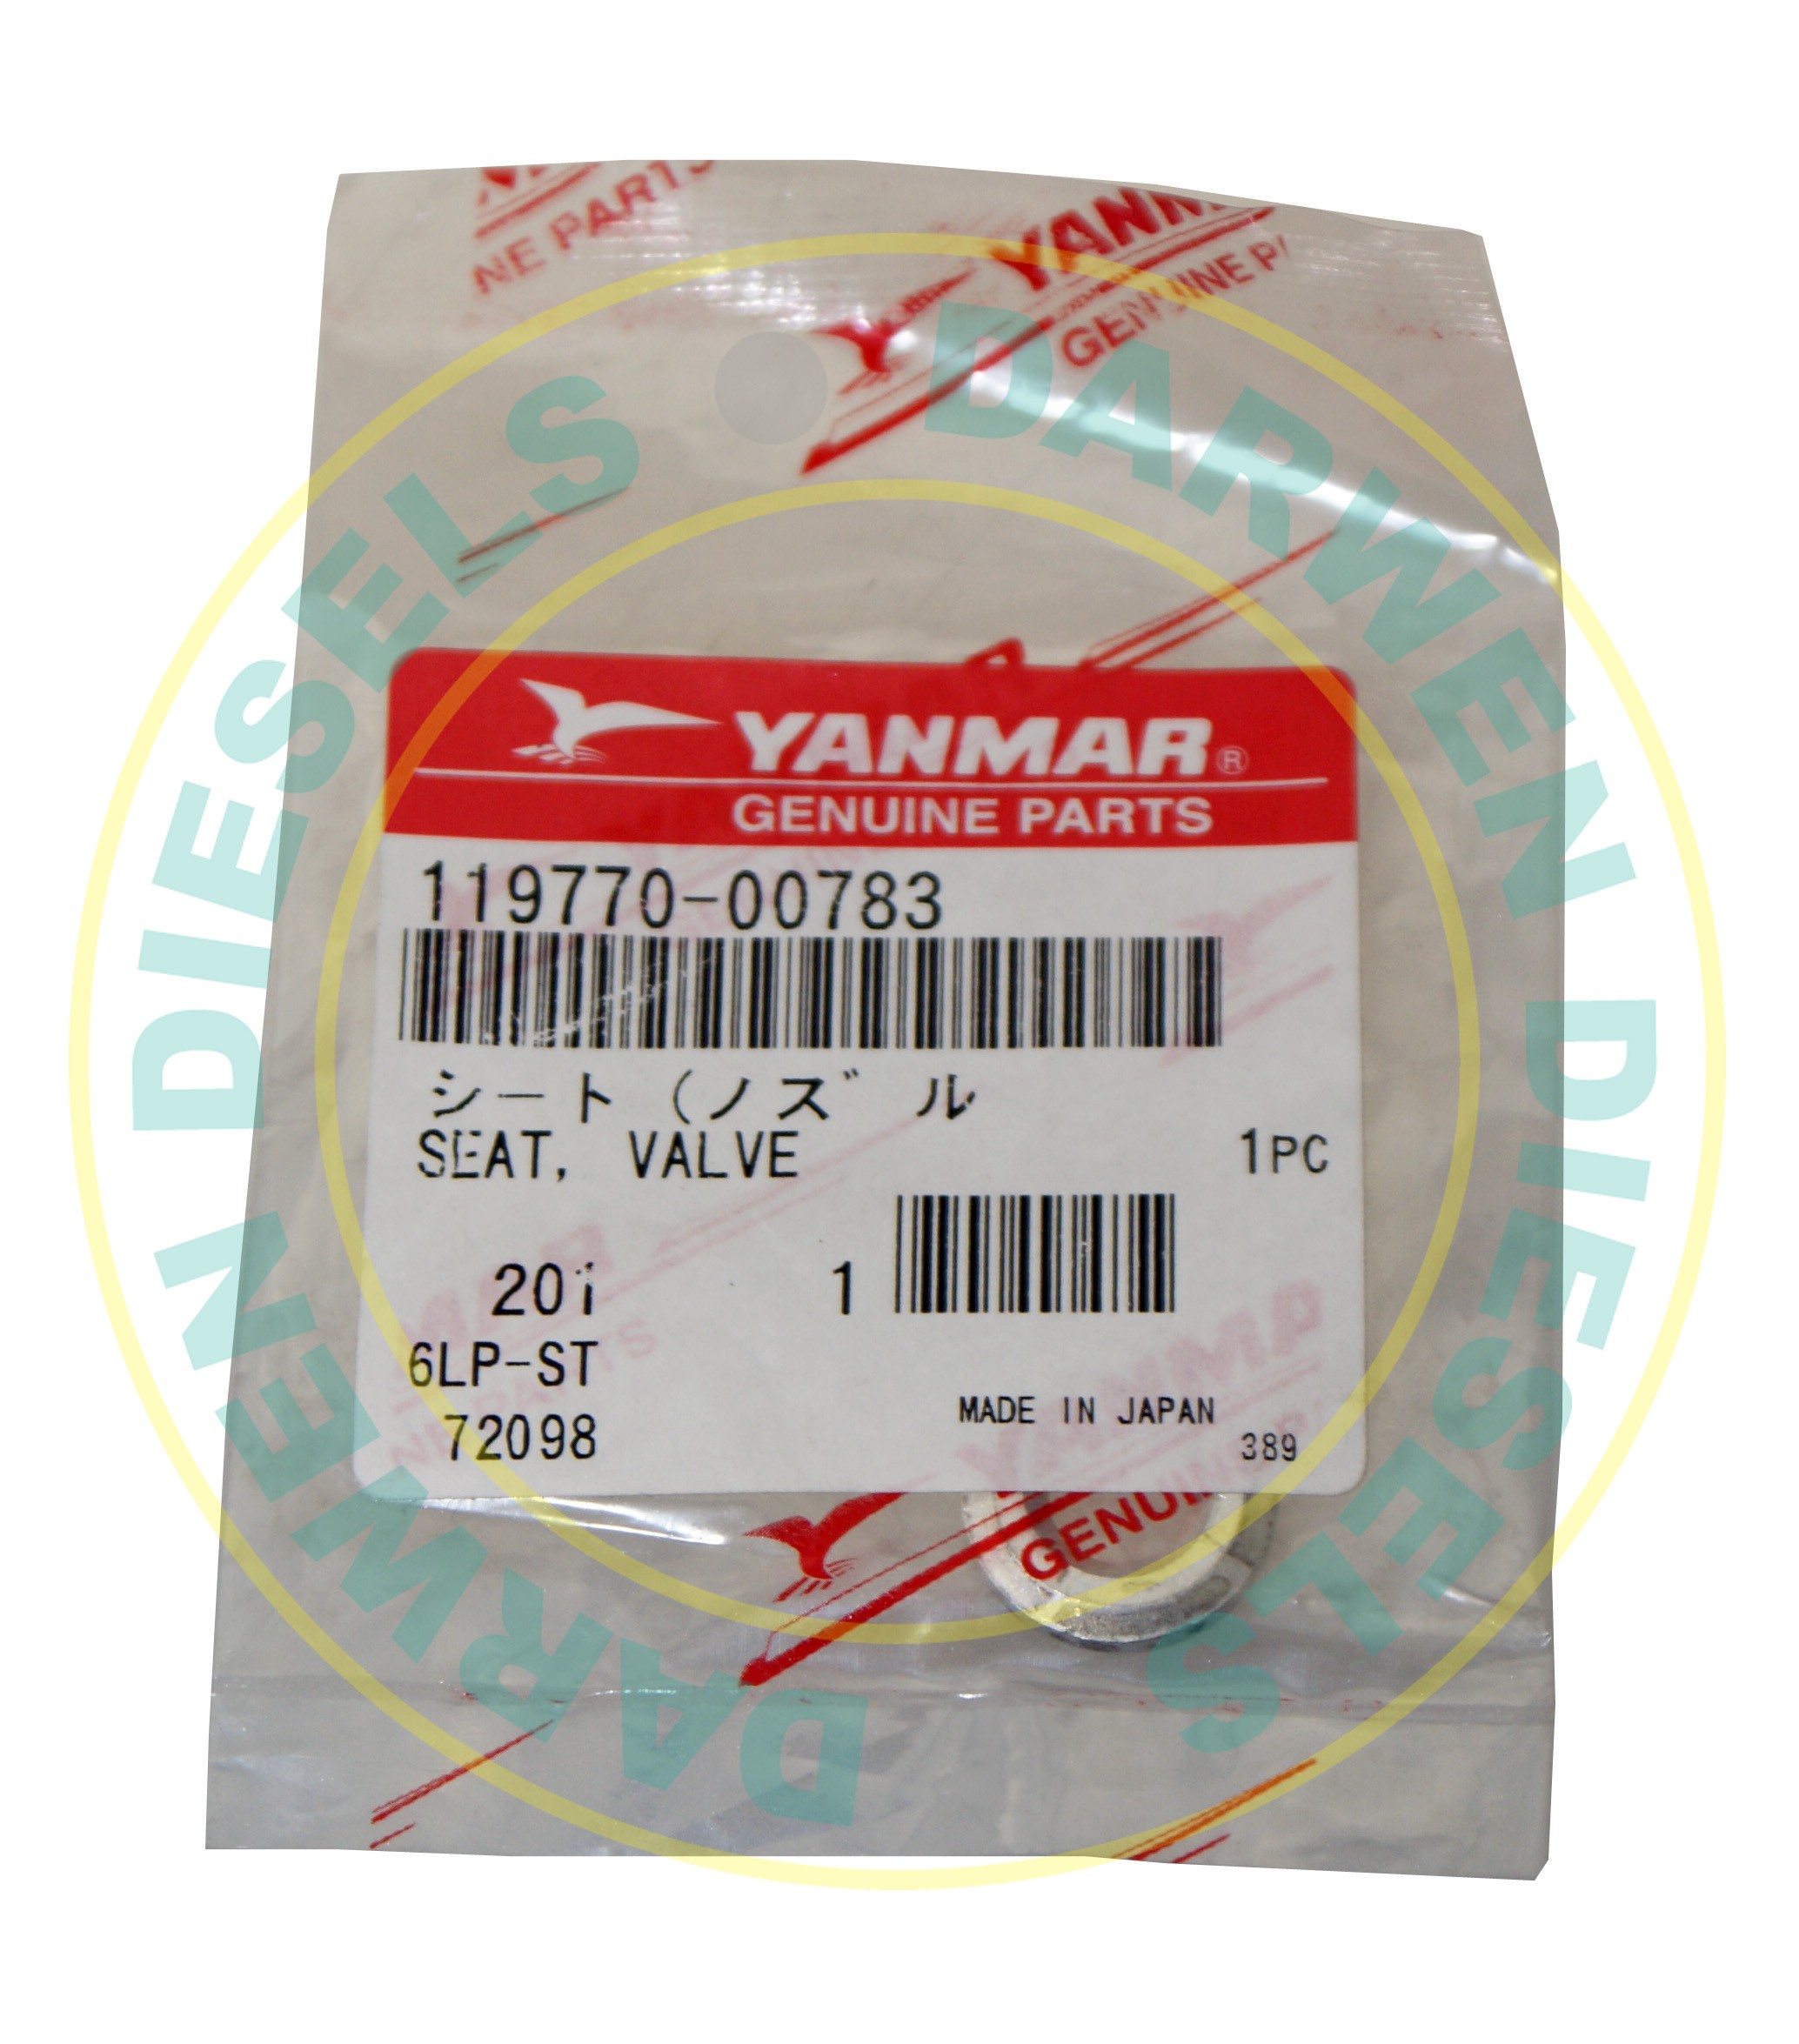 Yanmar Fuel Injector #119770-00783